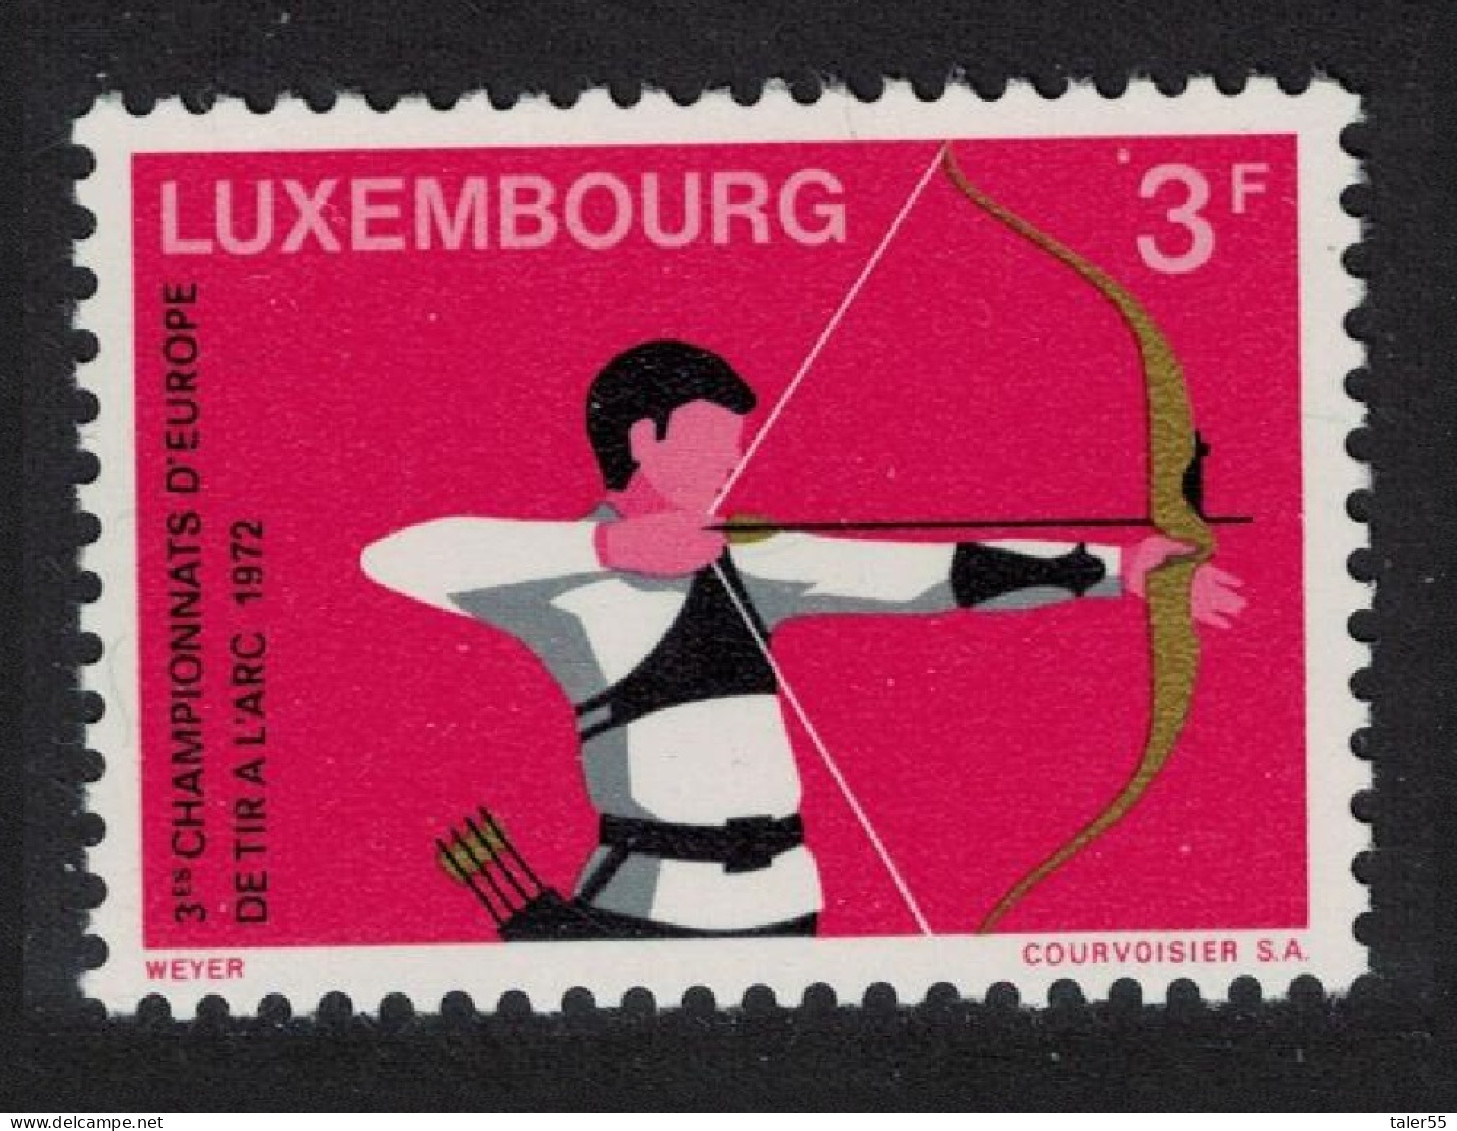 Luxembourg Archery Championships 1972 MNH SG#892 - Neufs